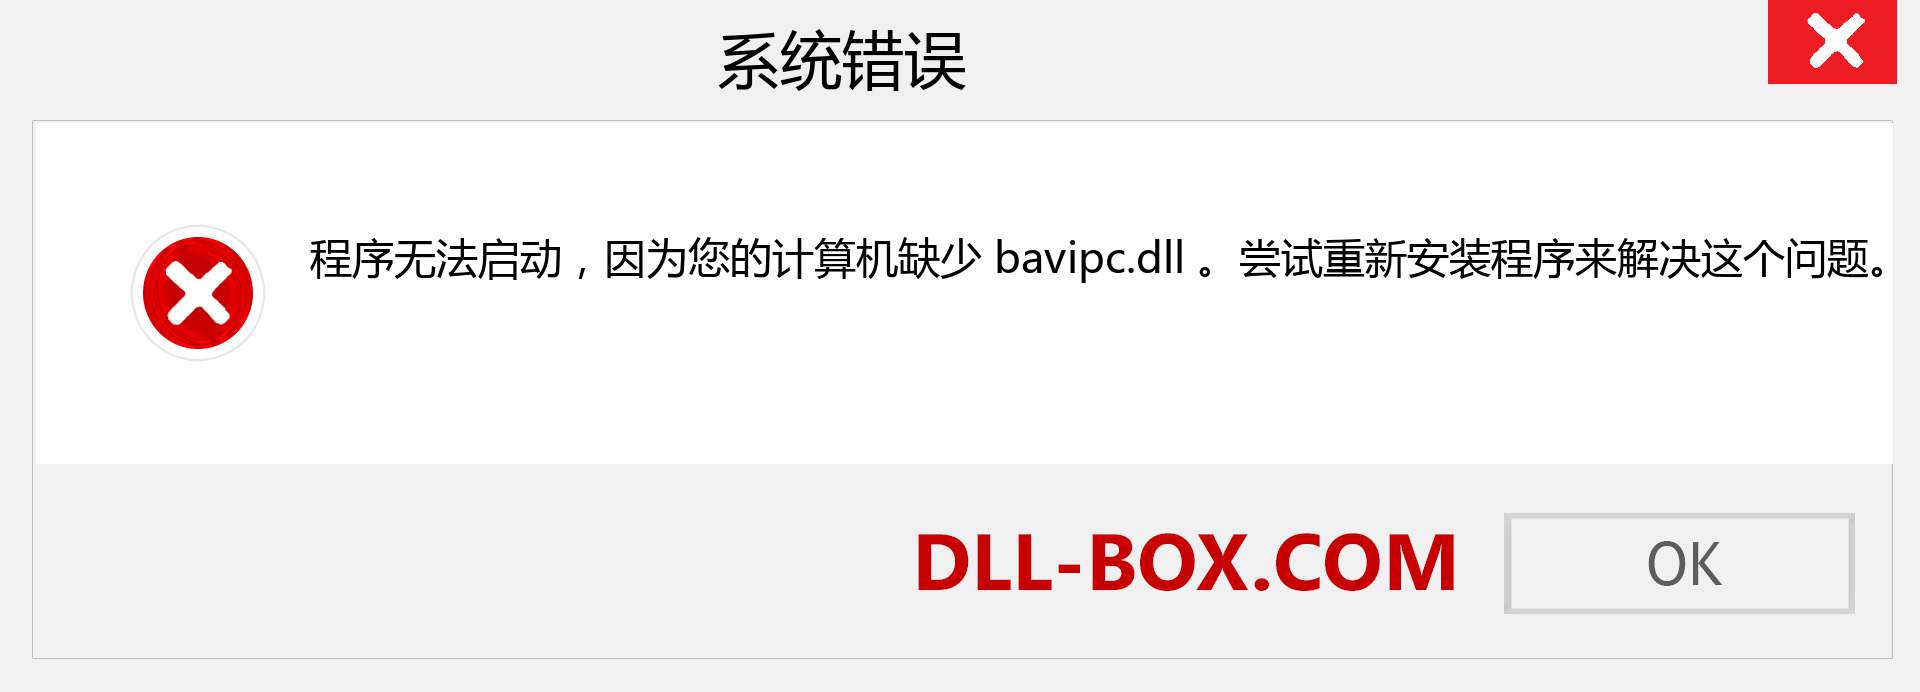 bavipc.dll 文件丢失？。 适用于 Windows 7、8、10 的下载 - 修复 Windows、照片、图像上的 bavipc dll 丢失错误